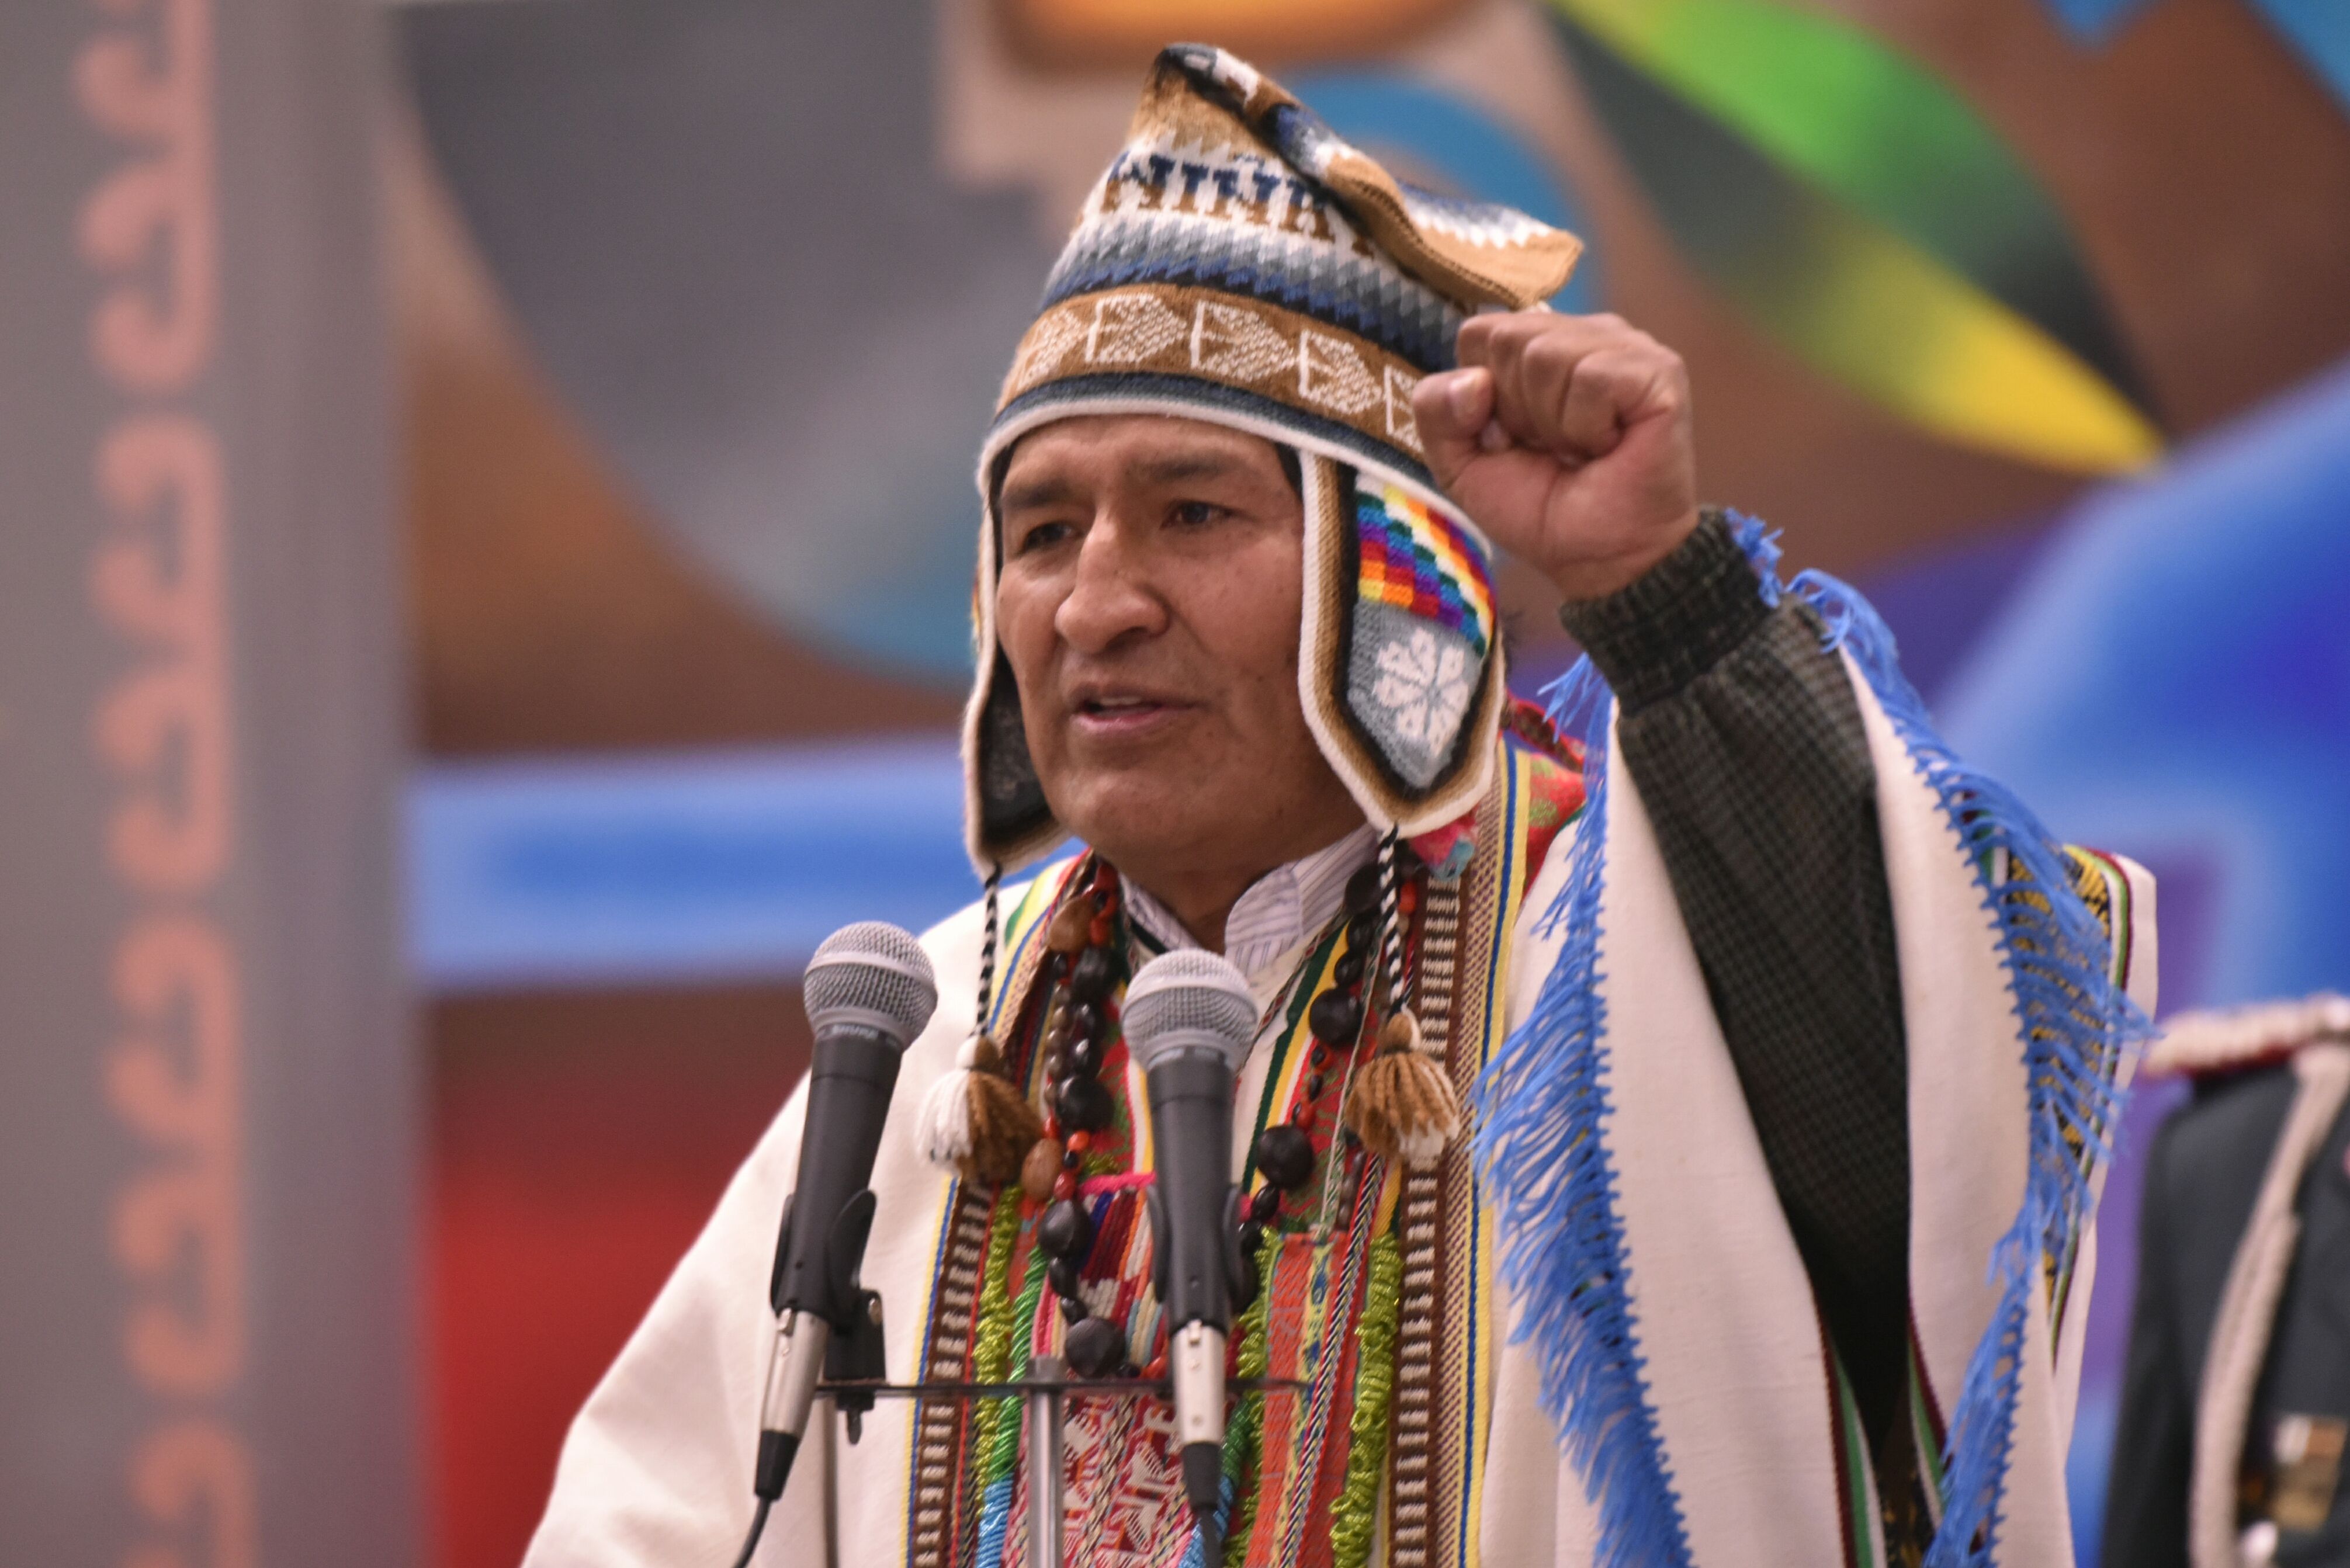 El presidente Morales destacó que siempre lucharemos contra el colonialismo y el imperialismo.